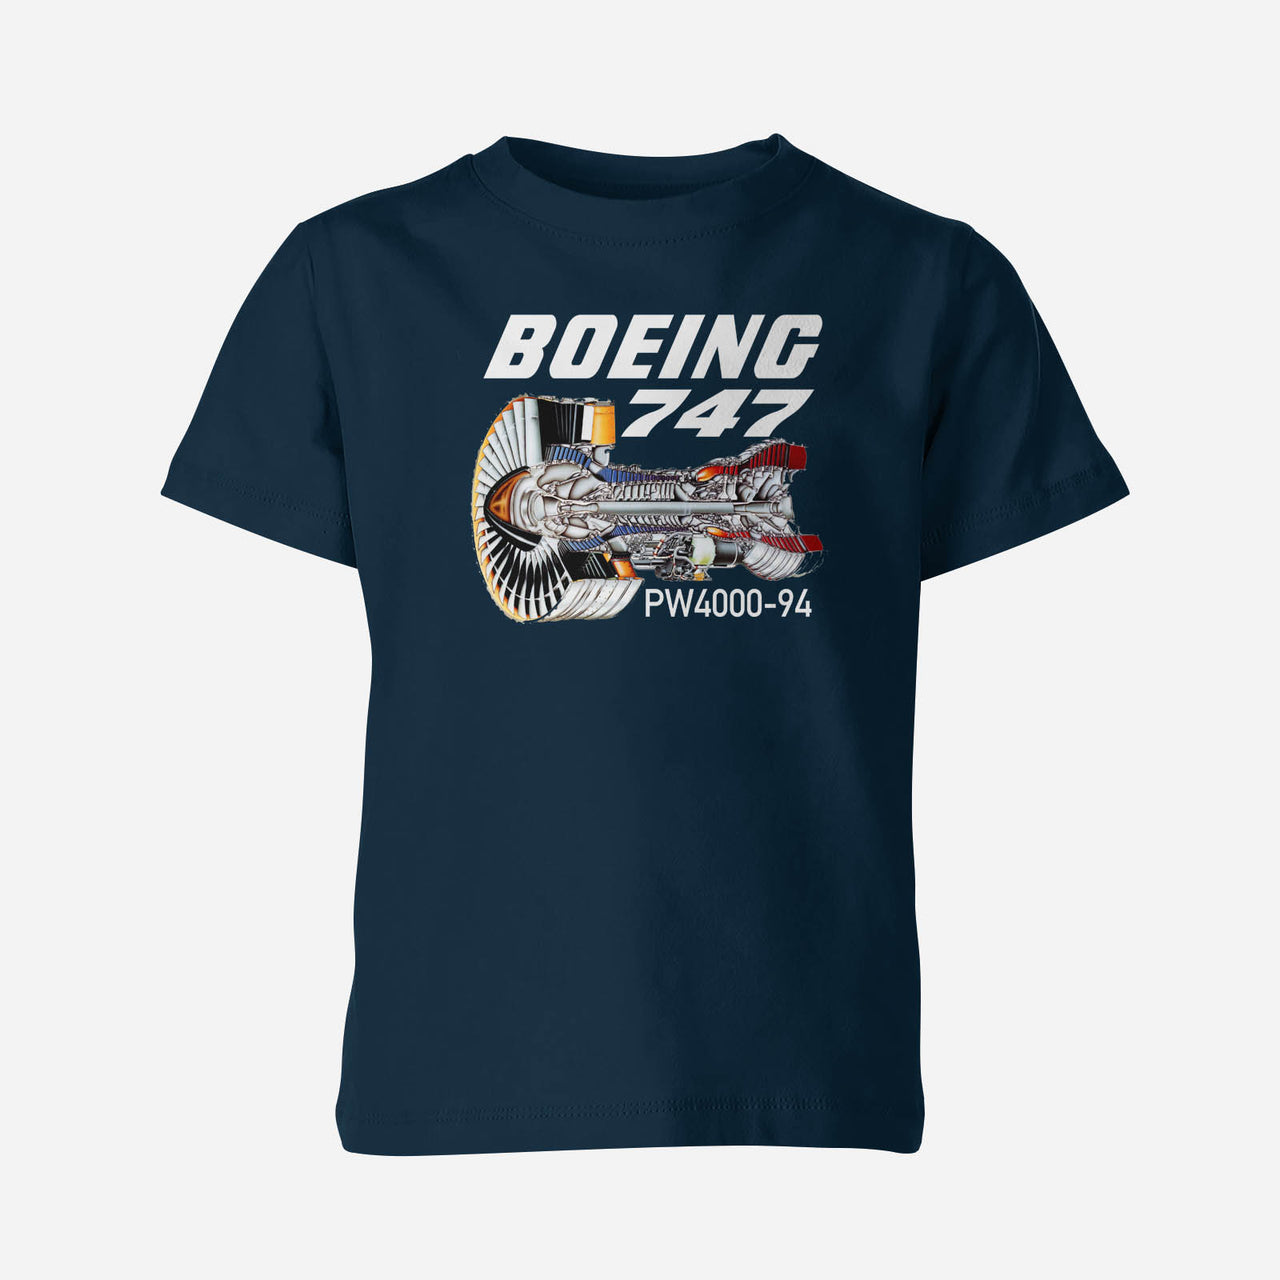 Boeing 747 & PW4000-94 Engine Designed Children T-Shirts